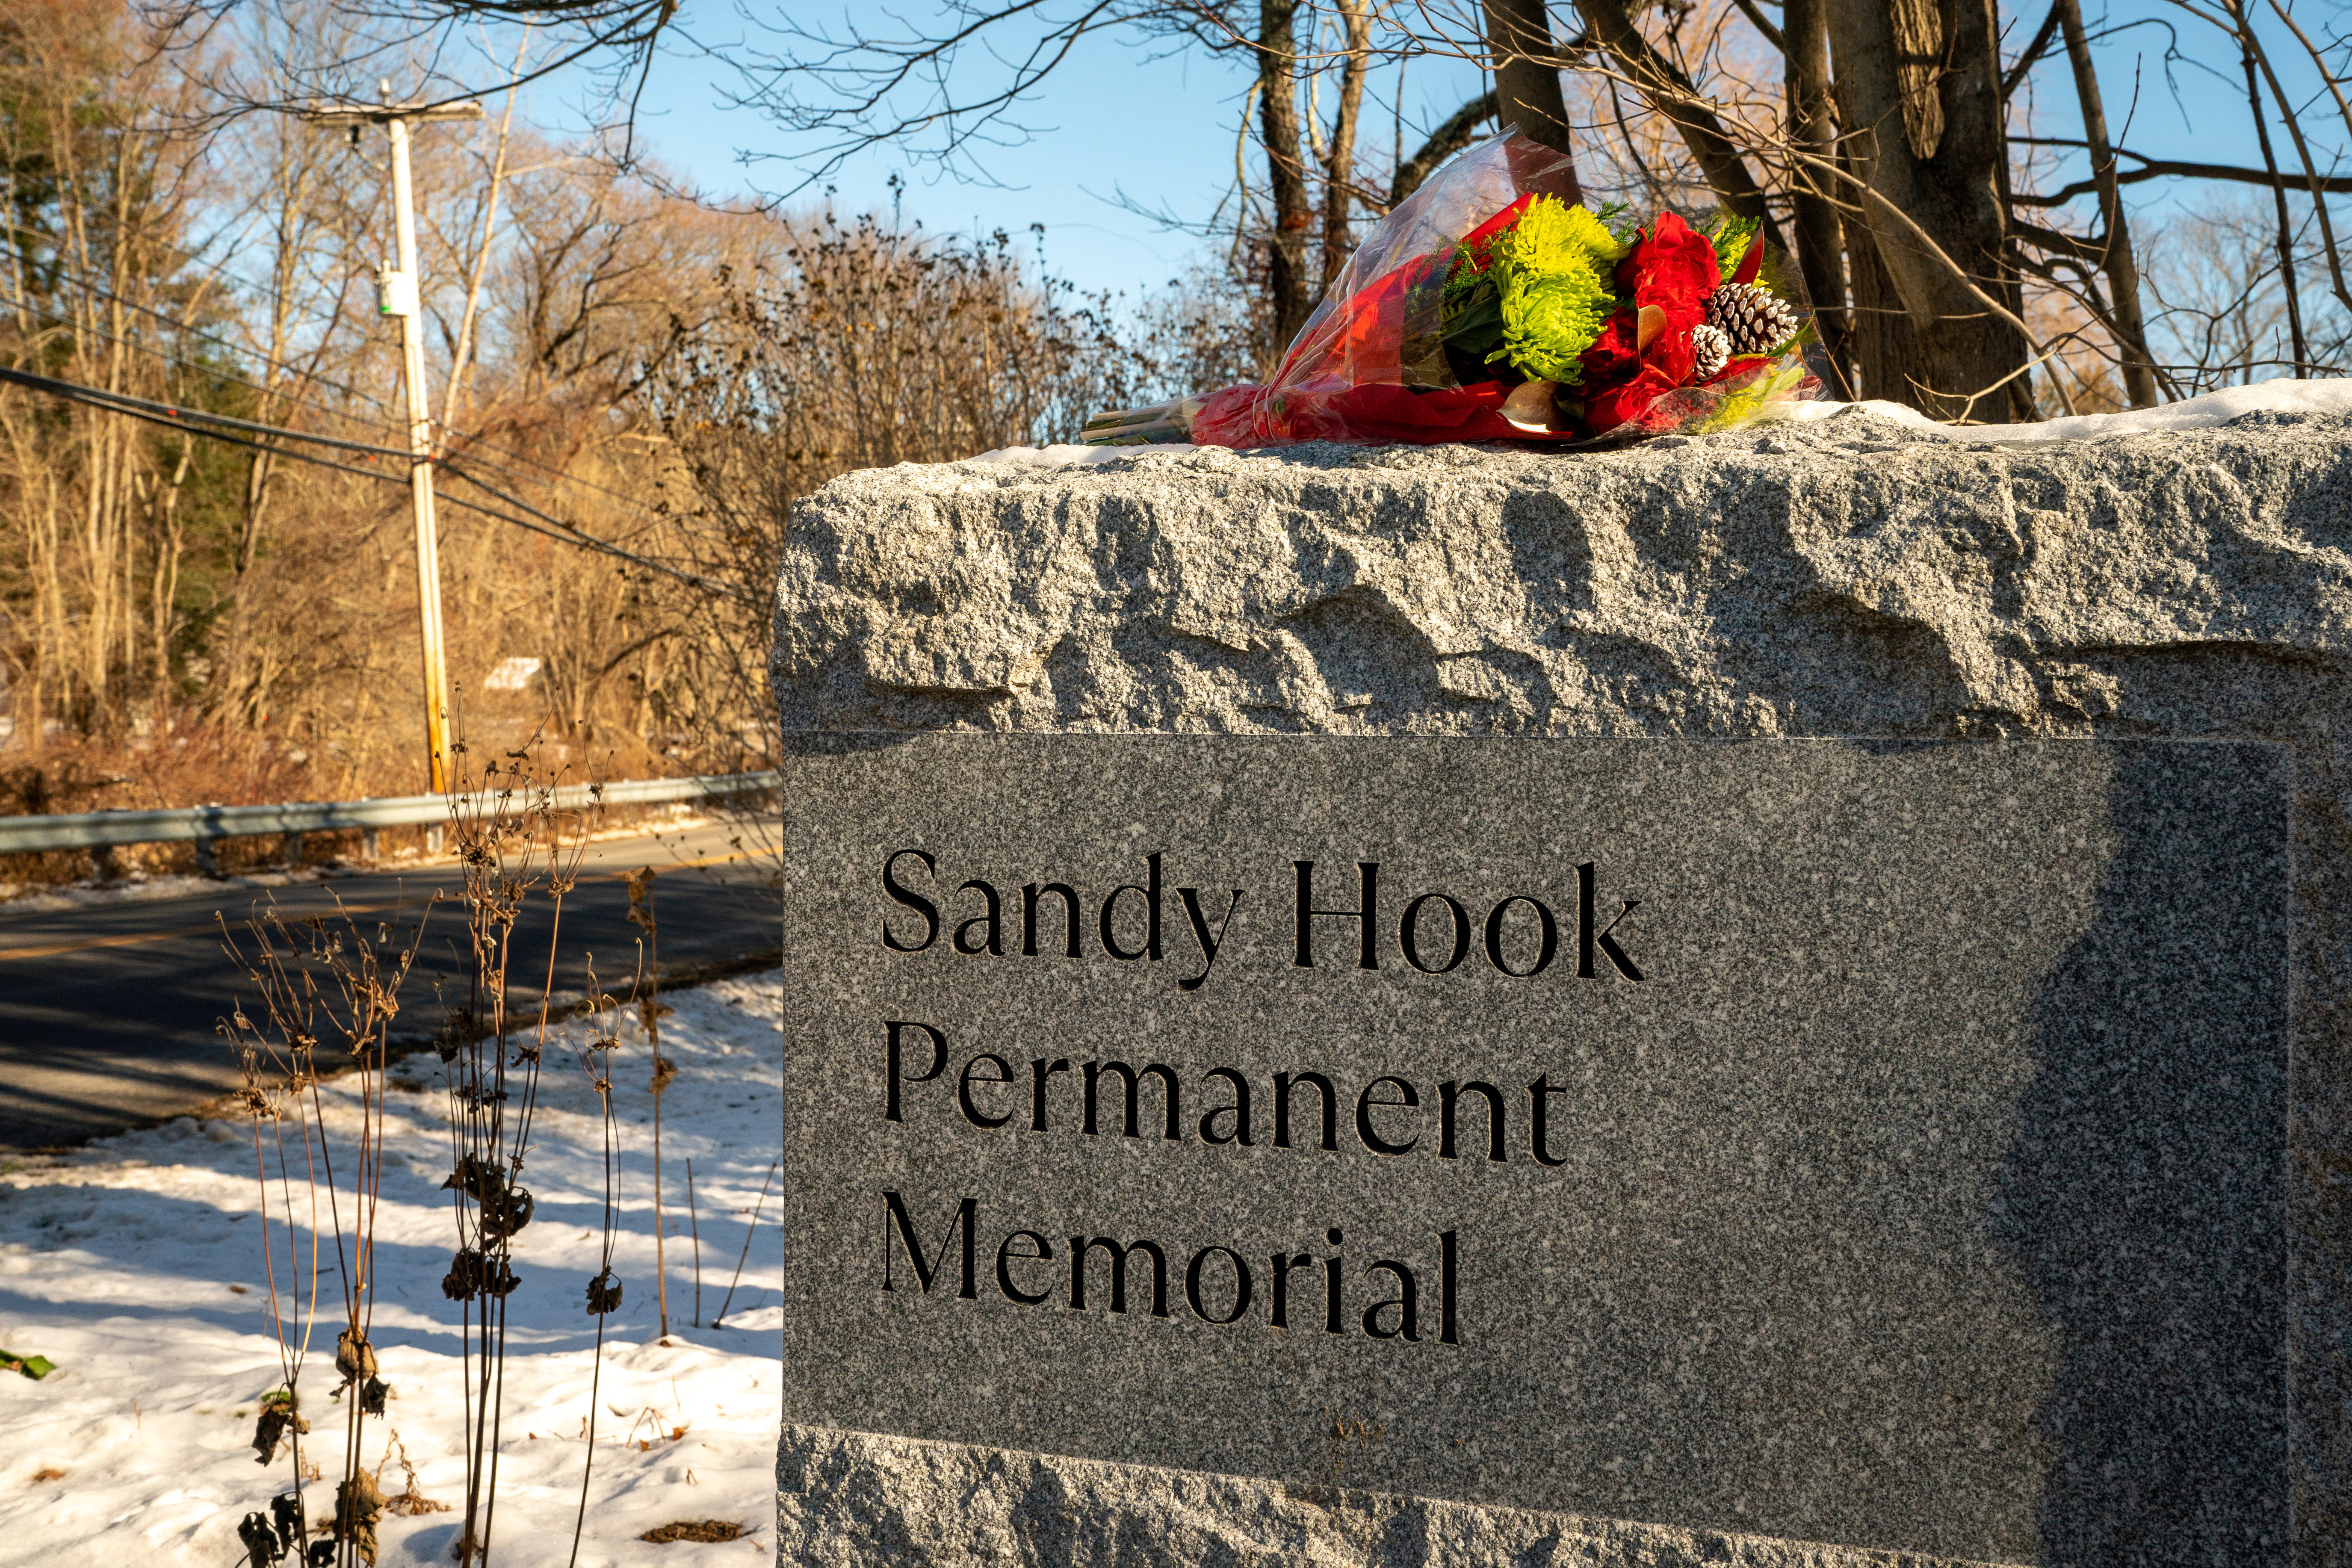 La escuela Sandy Hook sufrió una masacre en 2014 cuando un joven de 20 años asesinó a 28 personas (REUTERS/David 'Dee' Delgado)